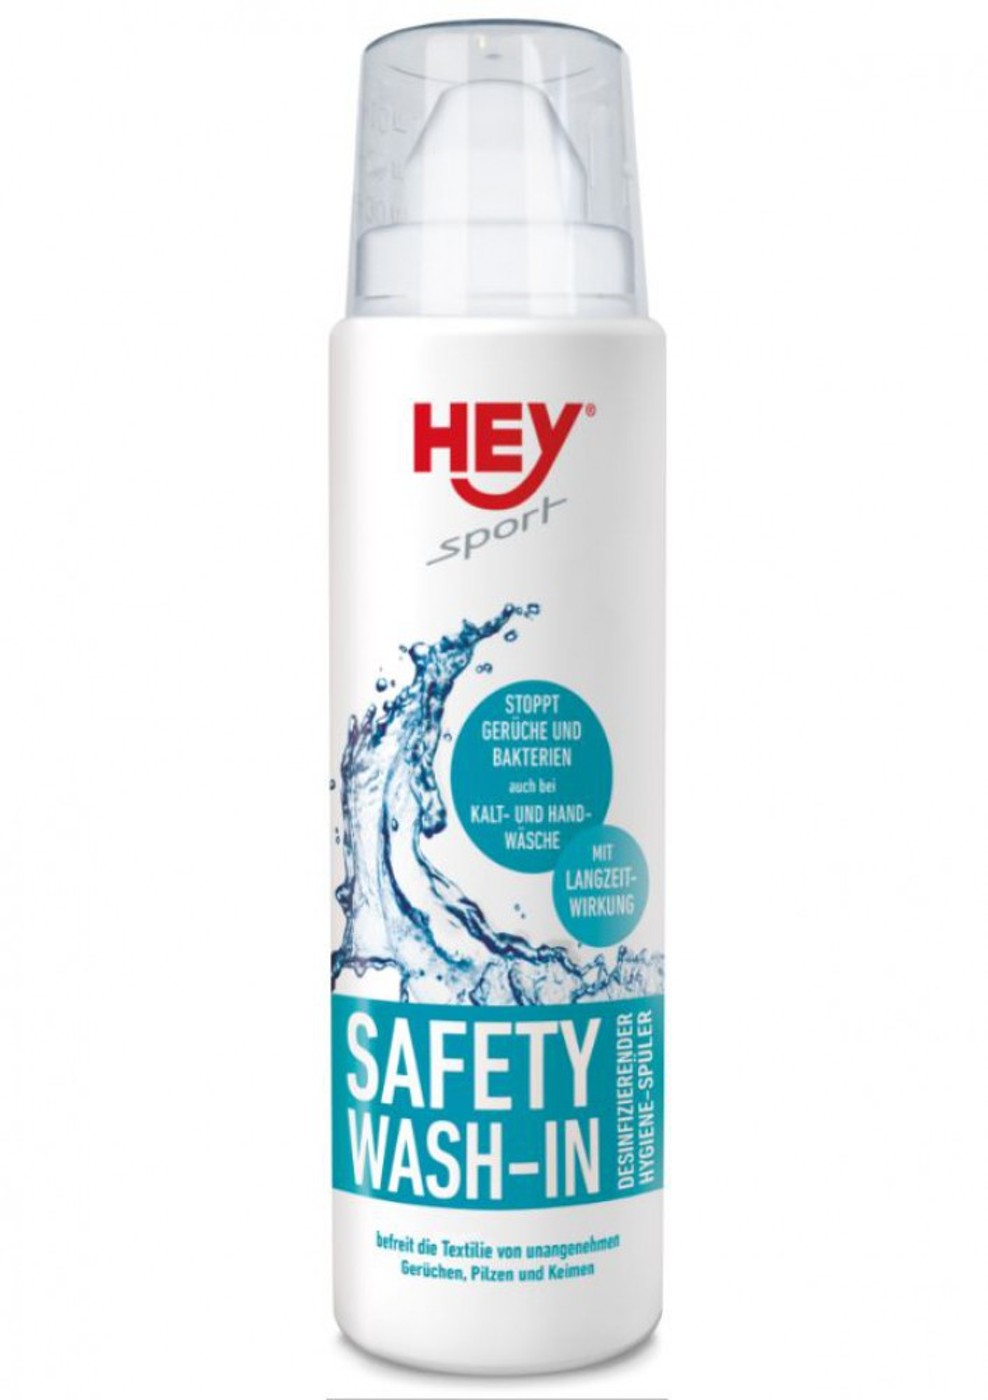 HEY SPORT Safety Wash-In